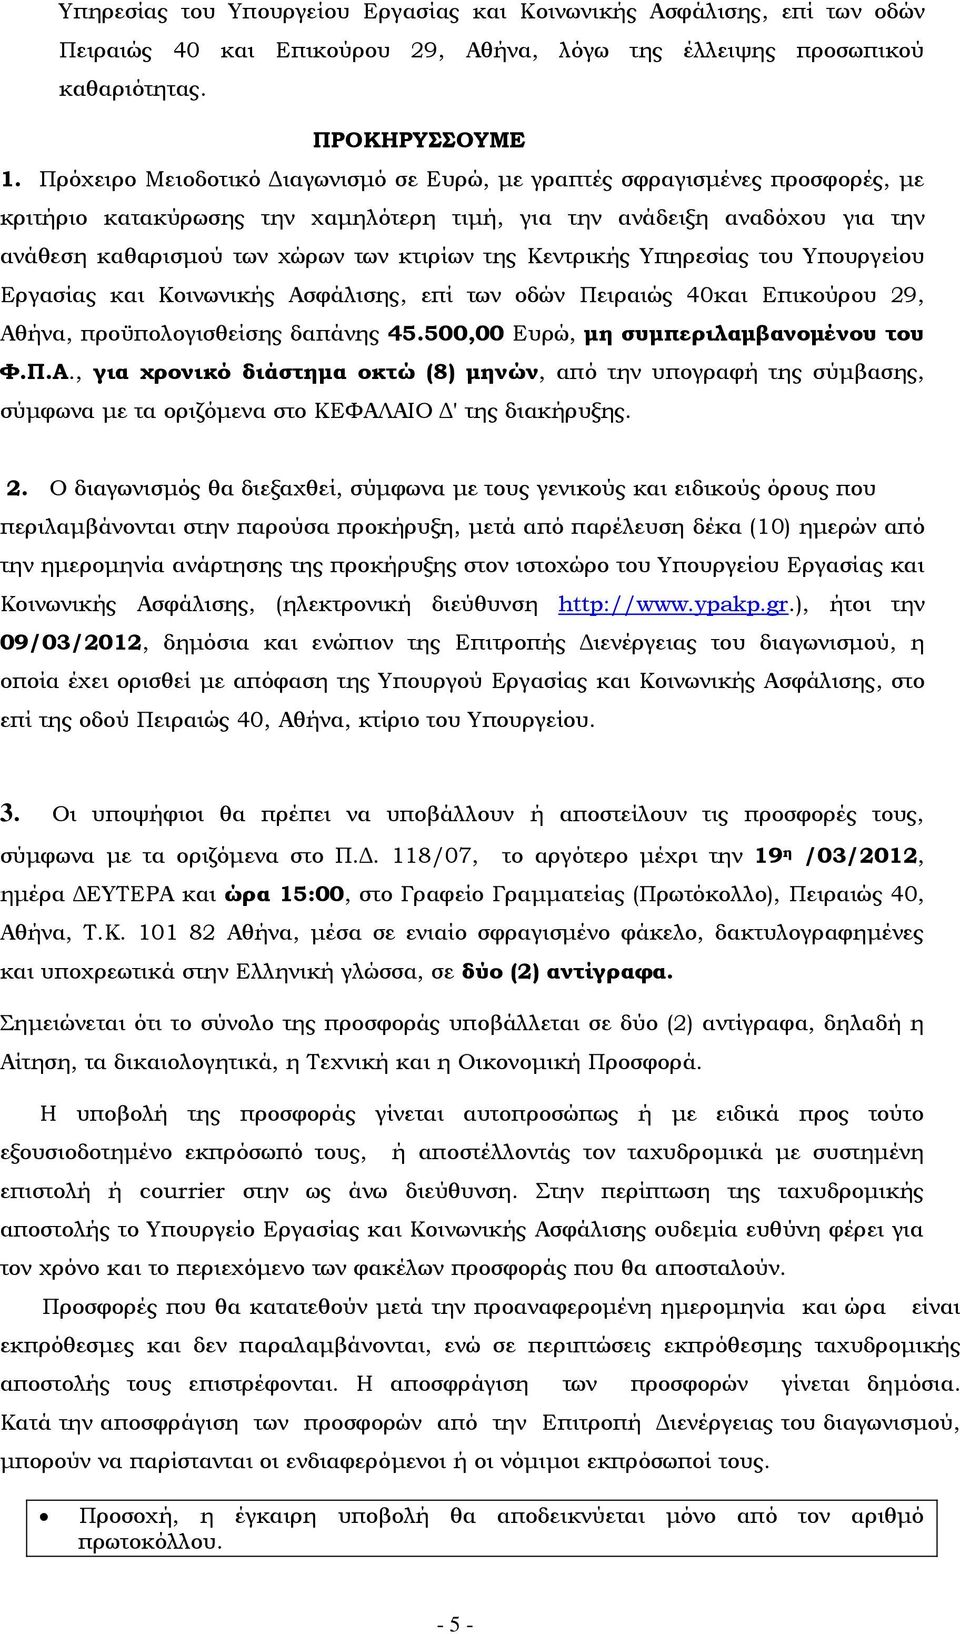 Κεντρικής Υπηρεσίας του Υπουργείου Εργασίας και Κοινωνικής Ασφάλισης, επί των οδών Πειραιώς 40και Επικούρου 29, Αθήνα, προϋπολογισθείσης δαπάνης 45.500,00 Ευρώ, μη συμπεριλαμβανομένου του Φ.Π.Α., για χρονικό διάστημα οκτώ (8) μηνών, από την υπογραφή της σύμβασης, σύμφωνα με τα οριζόμενα στο ΚΕΦΑΛΑΙΟ Δ' της διακήρυξης.